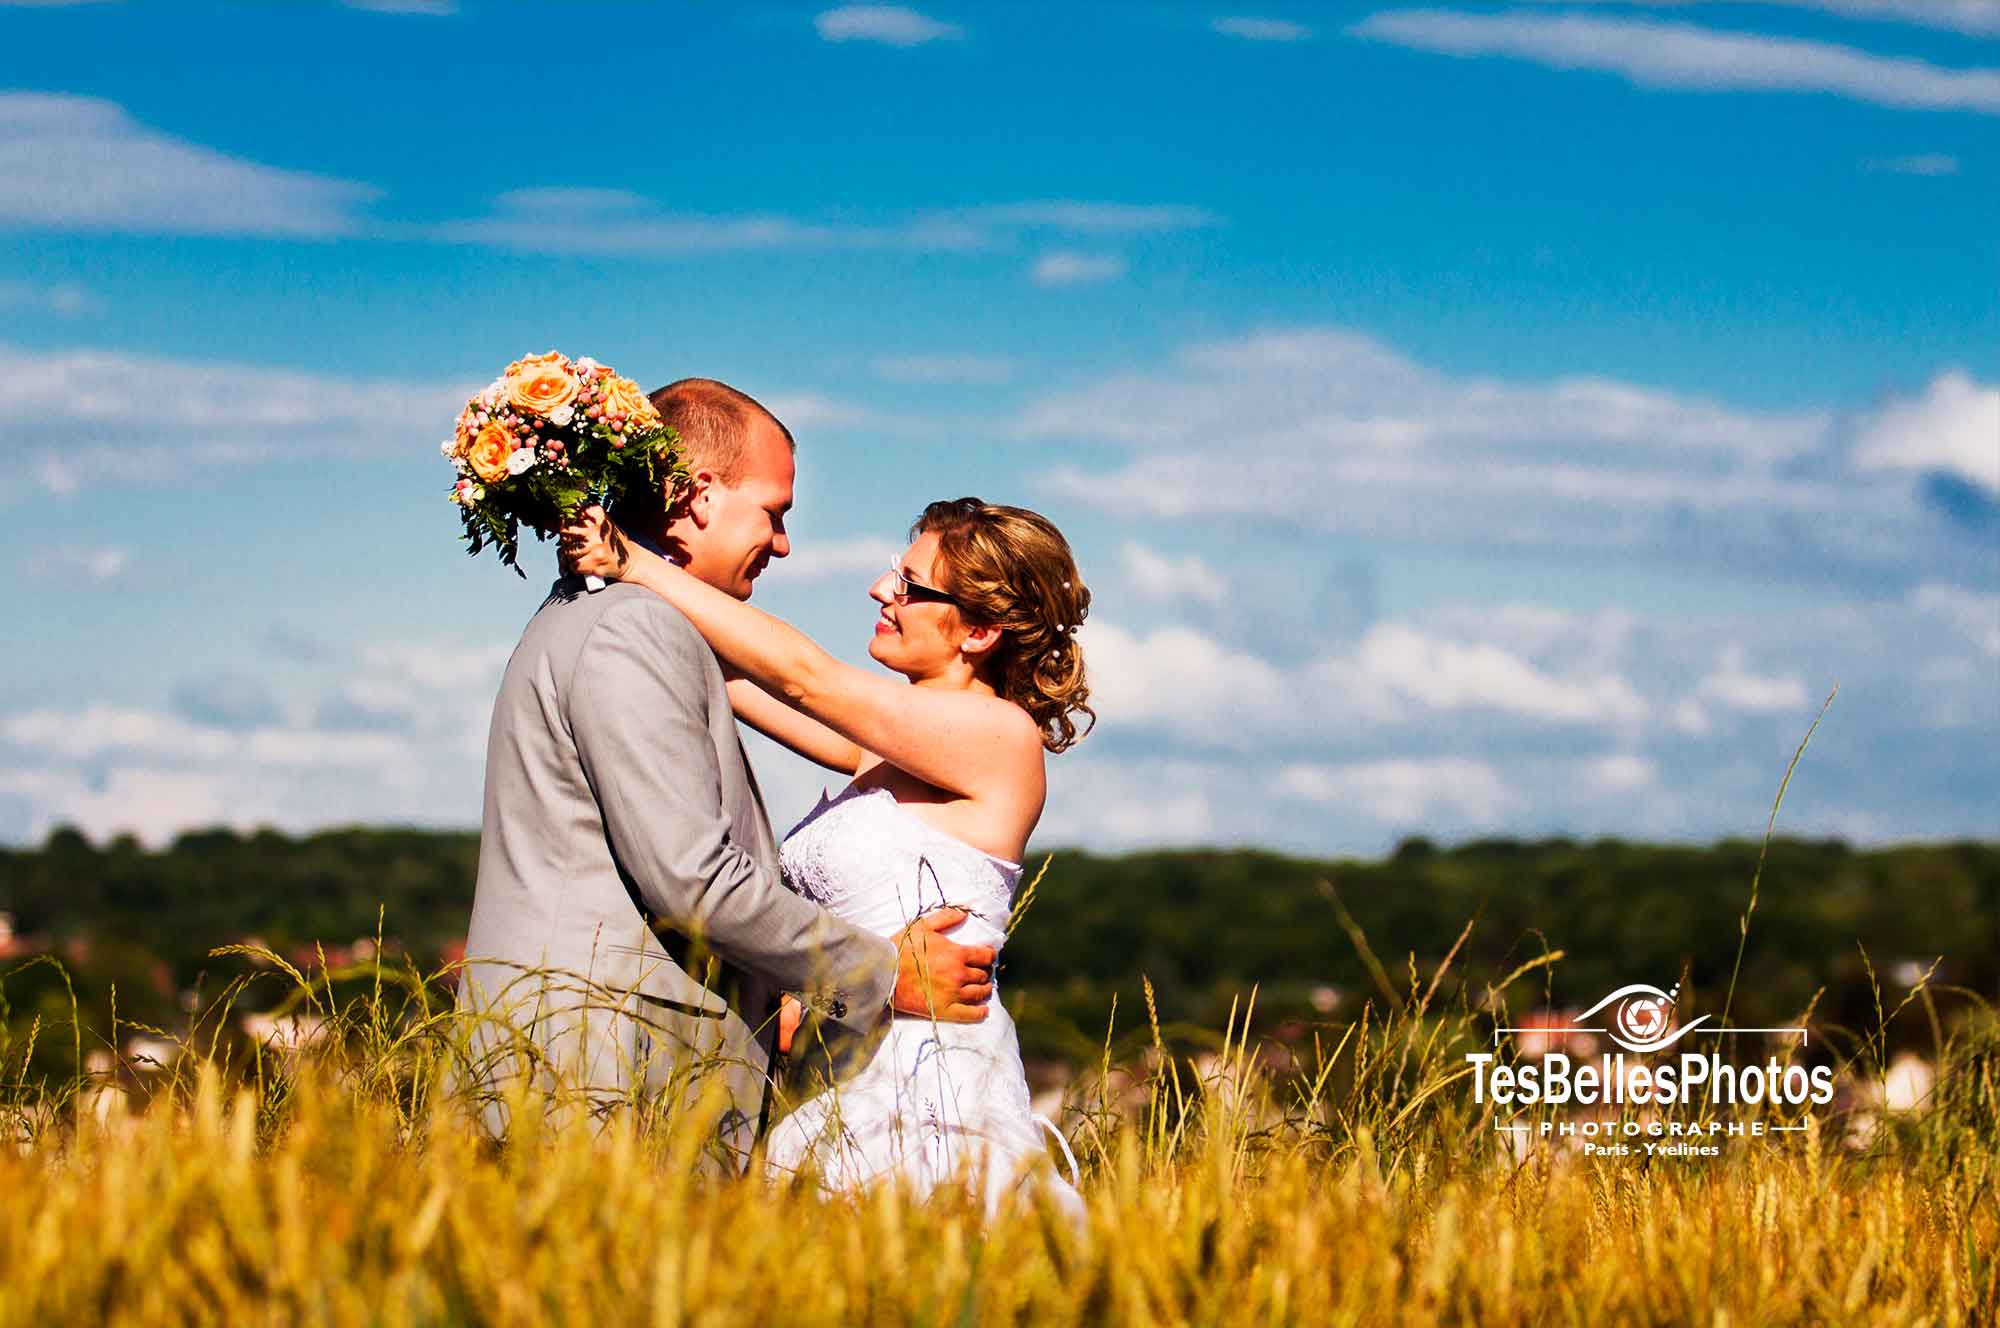 Photographe mariage Seine-et-Marne tarifs, photographe pas cher pour photo mariage